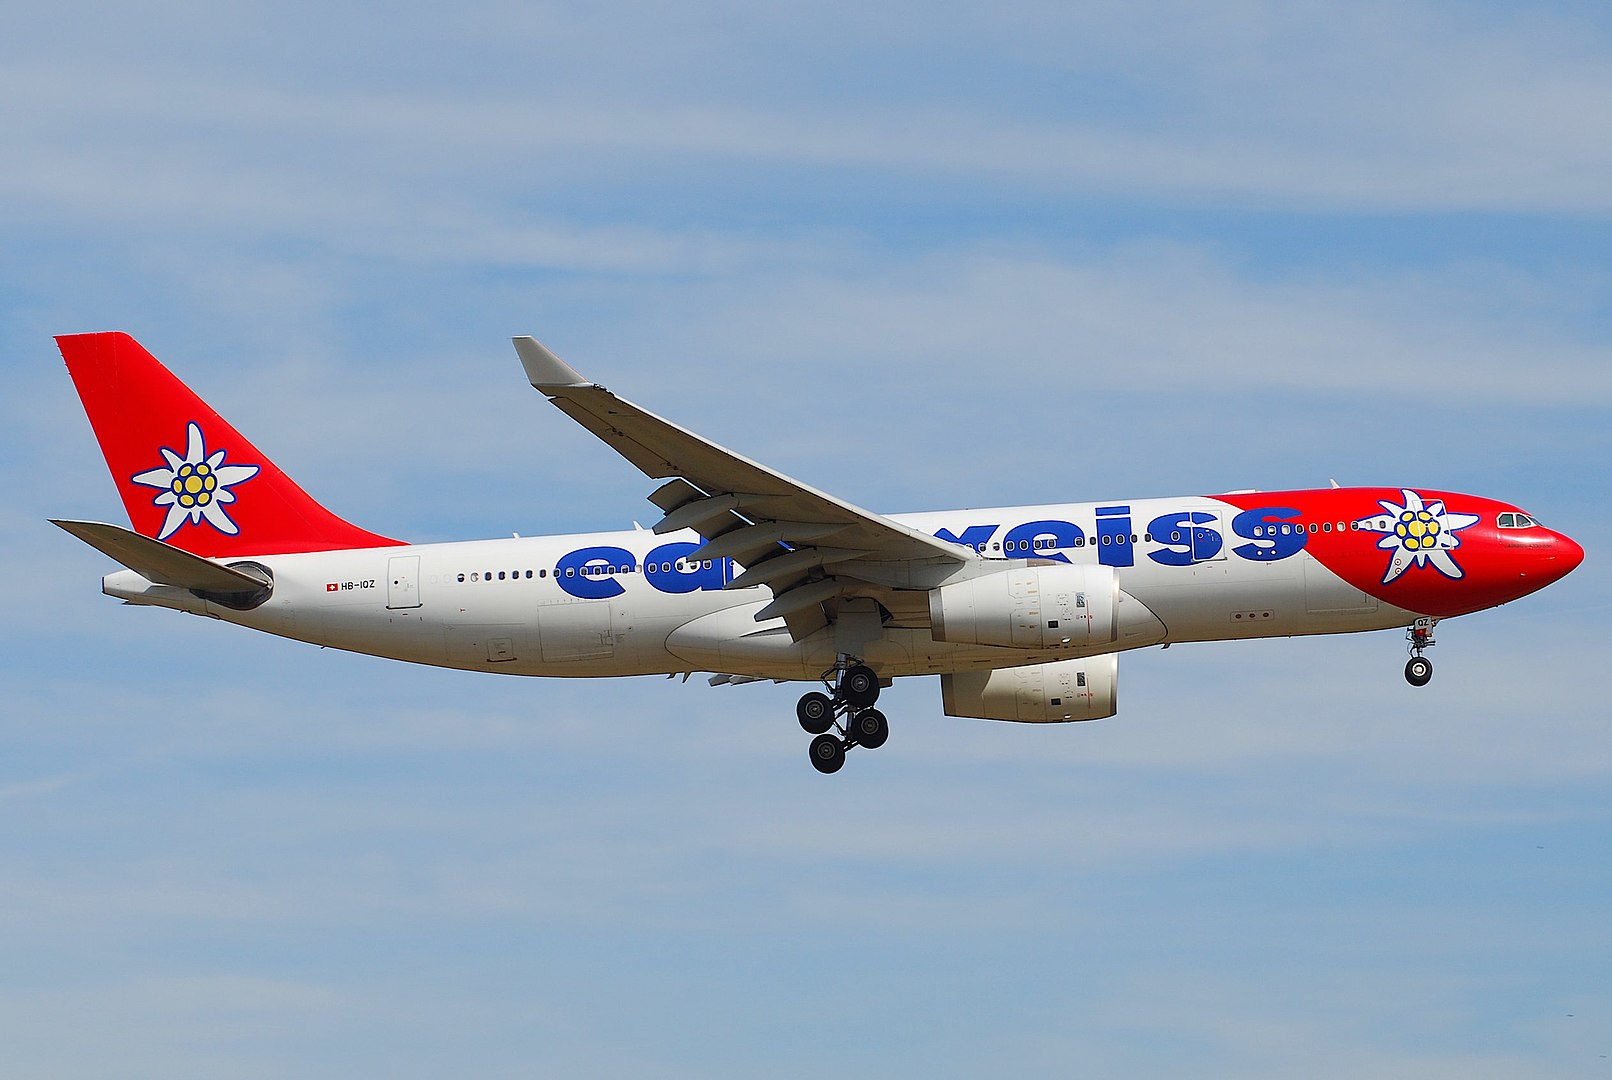 Cette image représente un avion Edelweiss Airlines qui a été retardé et dont les passagers se demandent s'il peuvent obtenir une indemnisation.